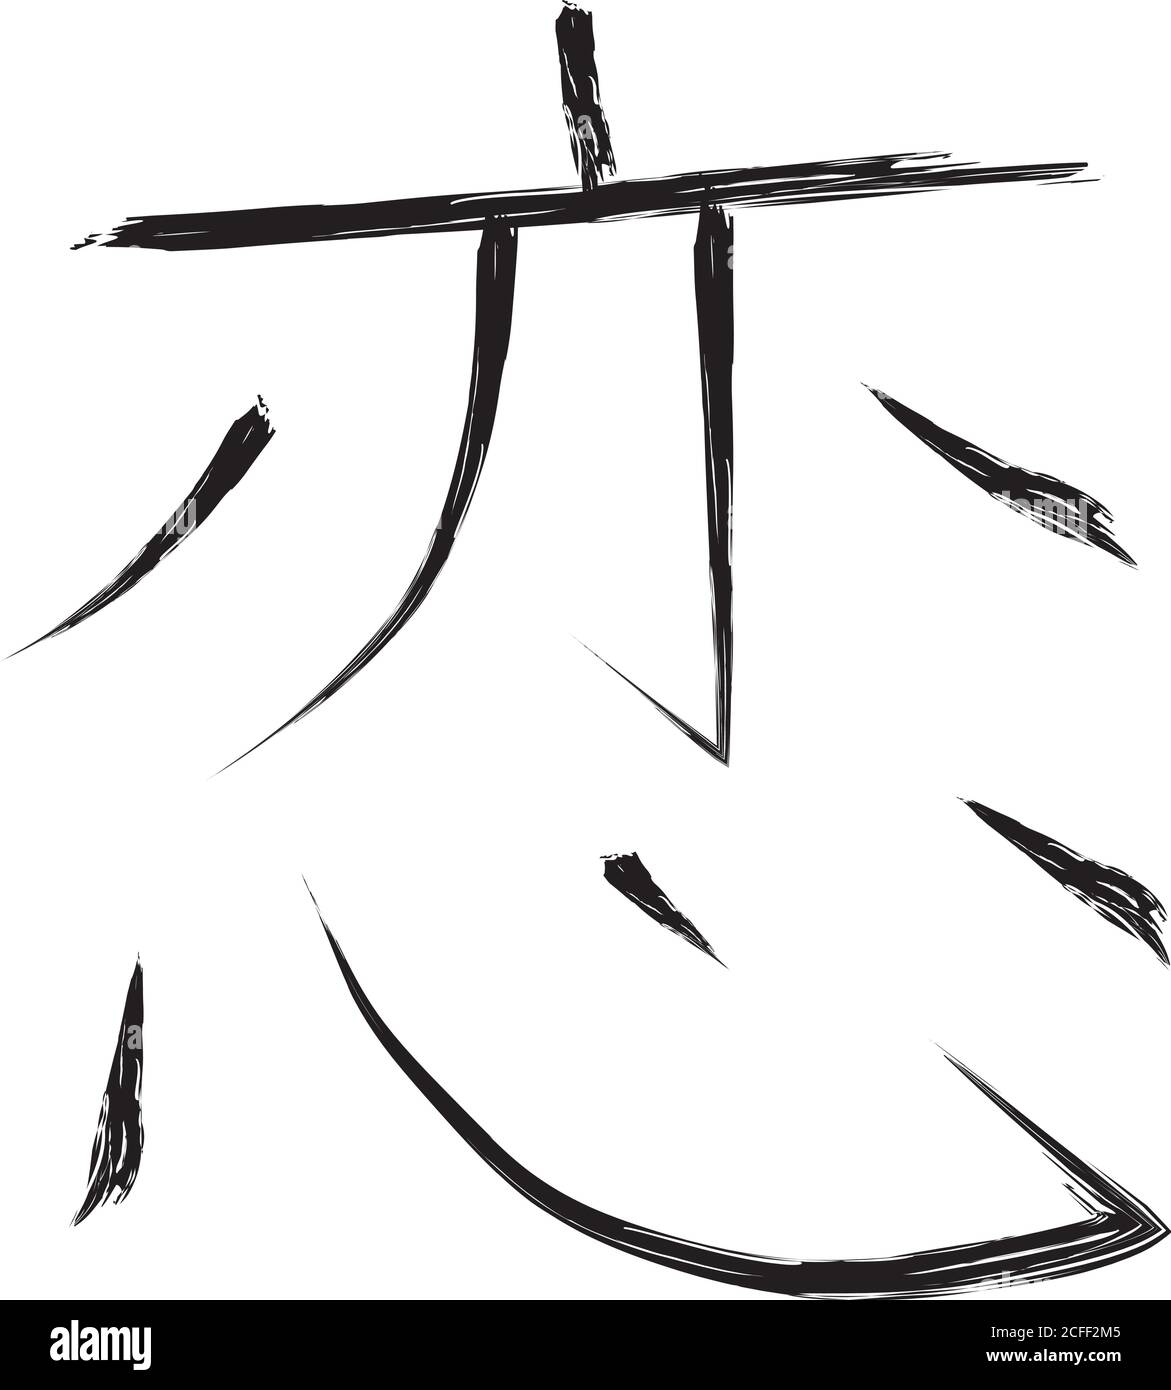 Simbolo kanji immagini e fotografie stock ad alta risoluzione - Alamy